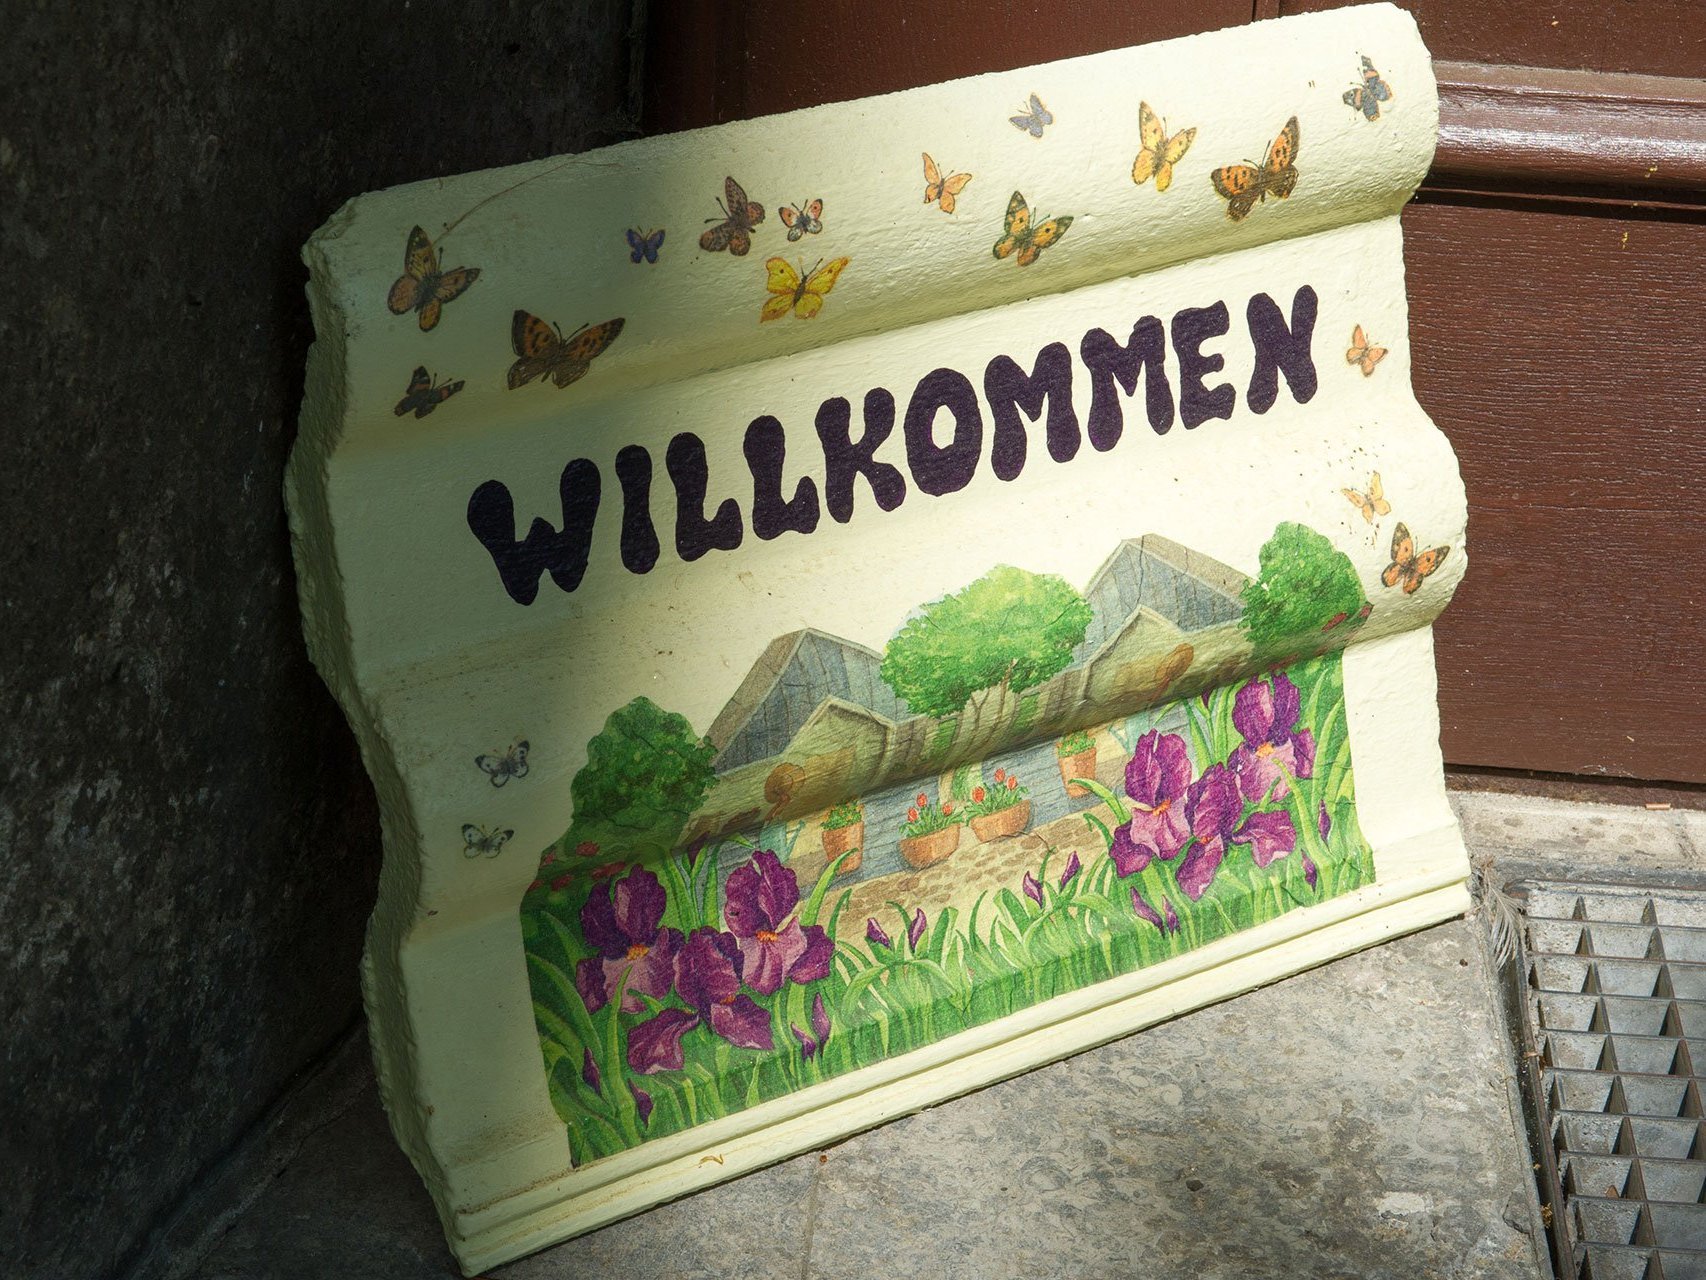 Nahaufnahme: Ein bemalter Dachziegel neben der Eingangstür mit der Aufschrift "WILLKOMMEN", einer gemalten Wiesenlandschaft und bunten Schmetterlingen